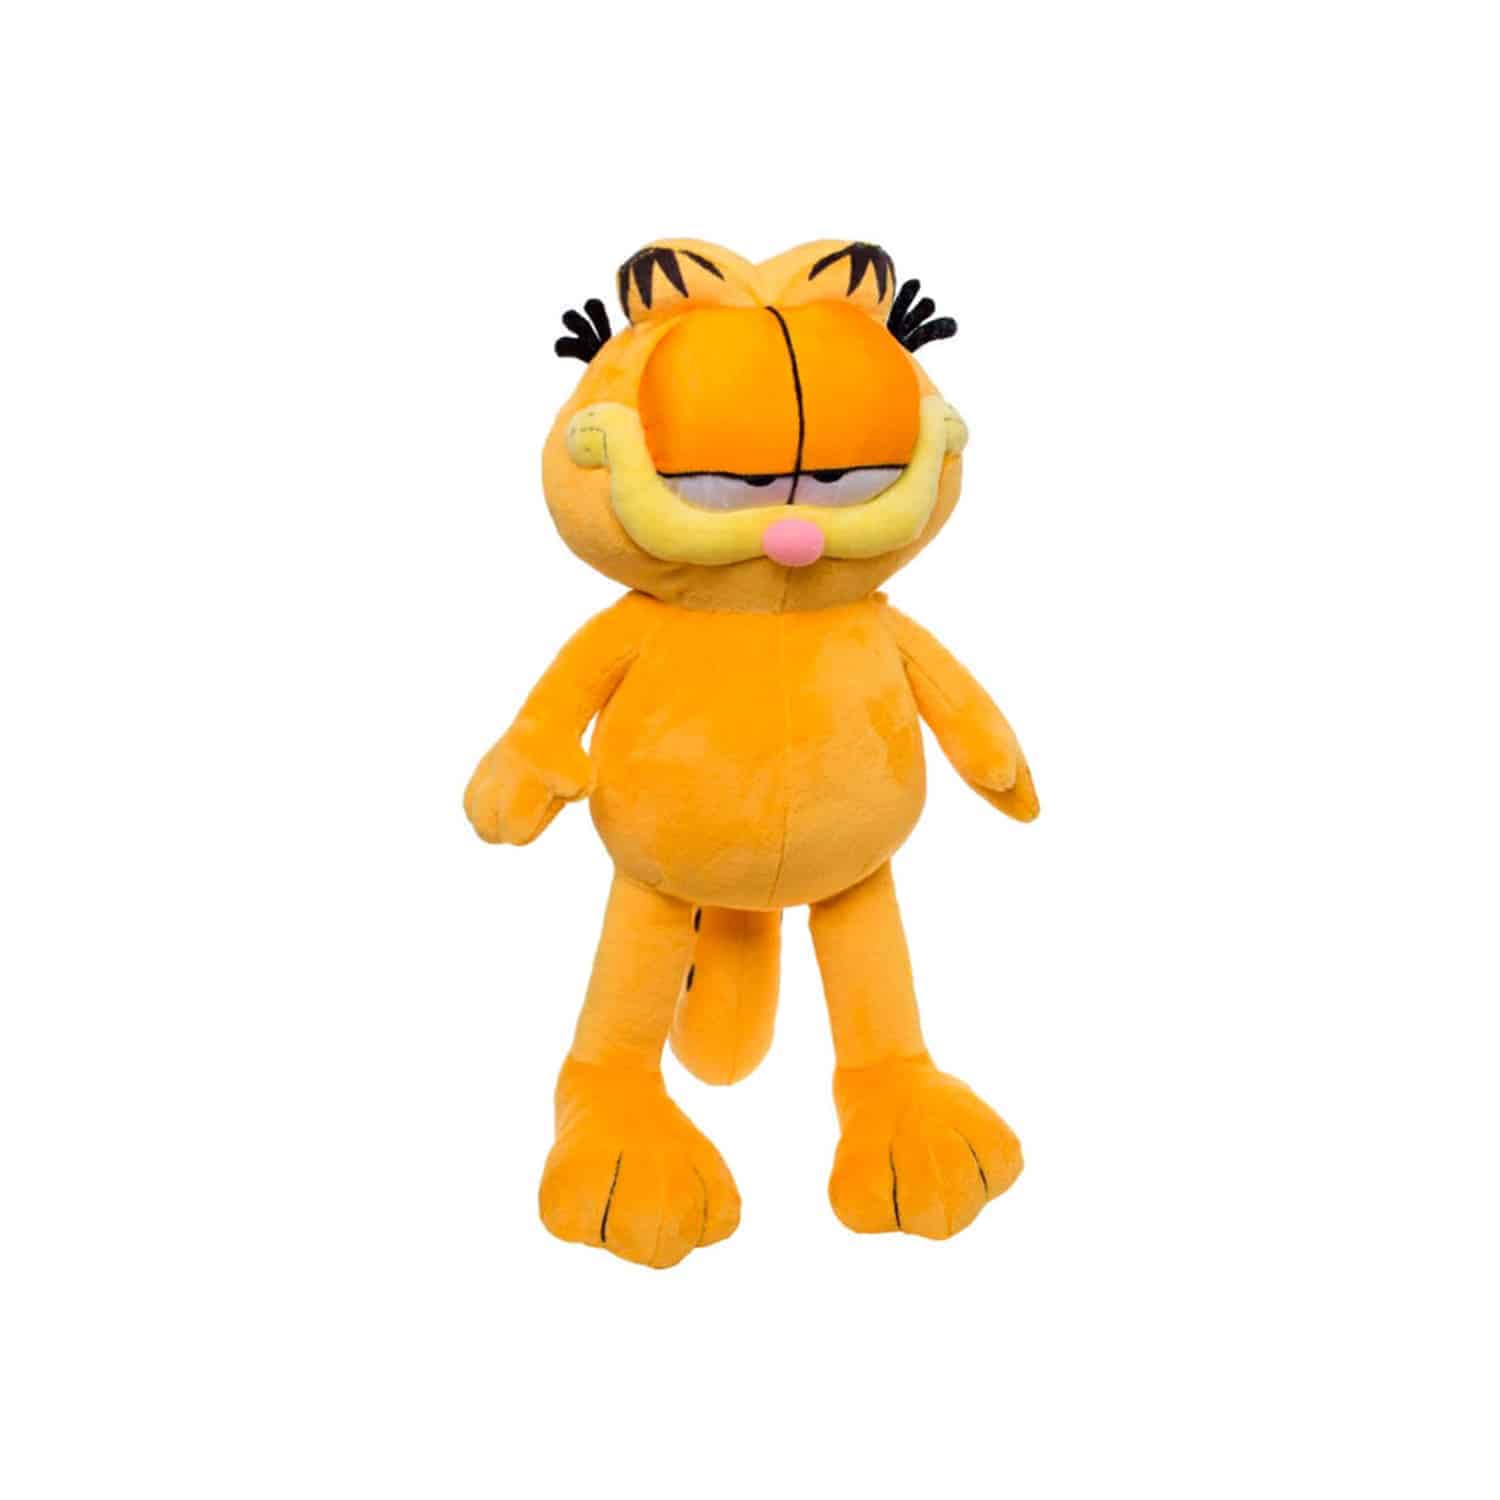 Garfield Plush Toy